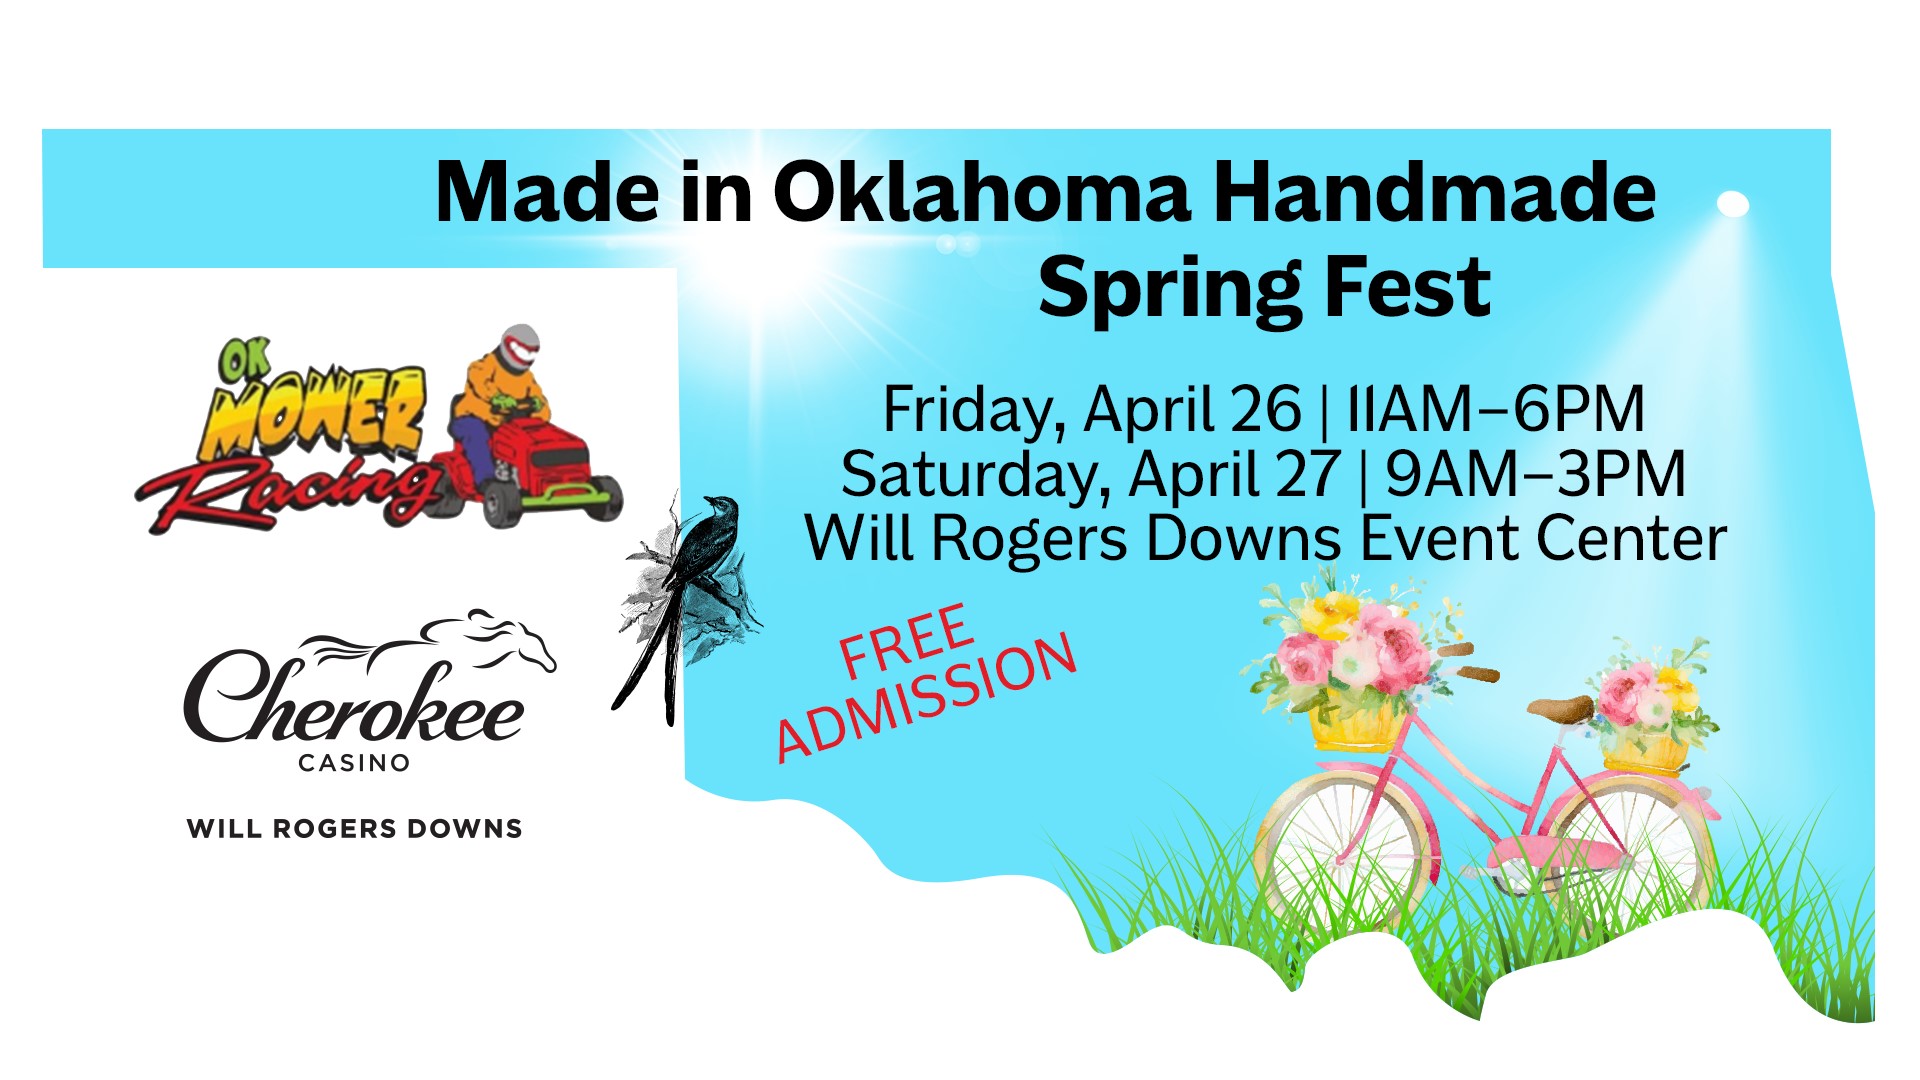 Made in Oklahoma Handmade Spring Fest